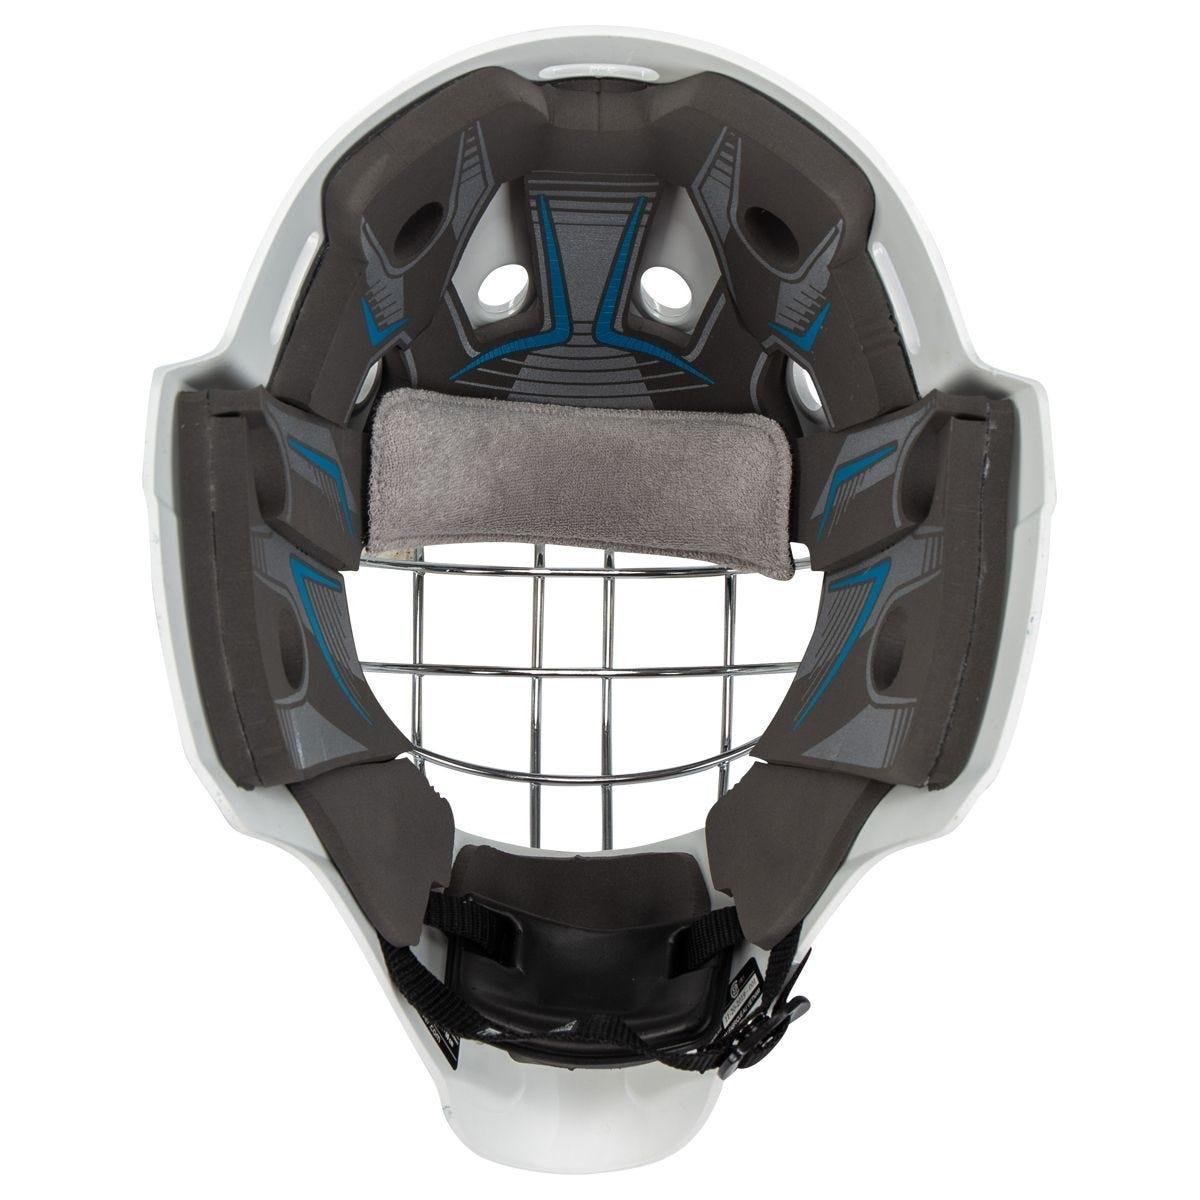 Bauer 930 Sr. Certified Goalie Maskproduct zoom image #6